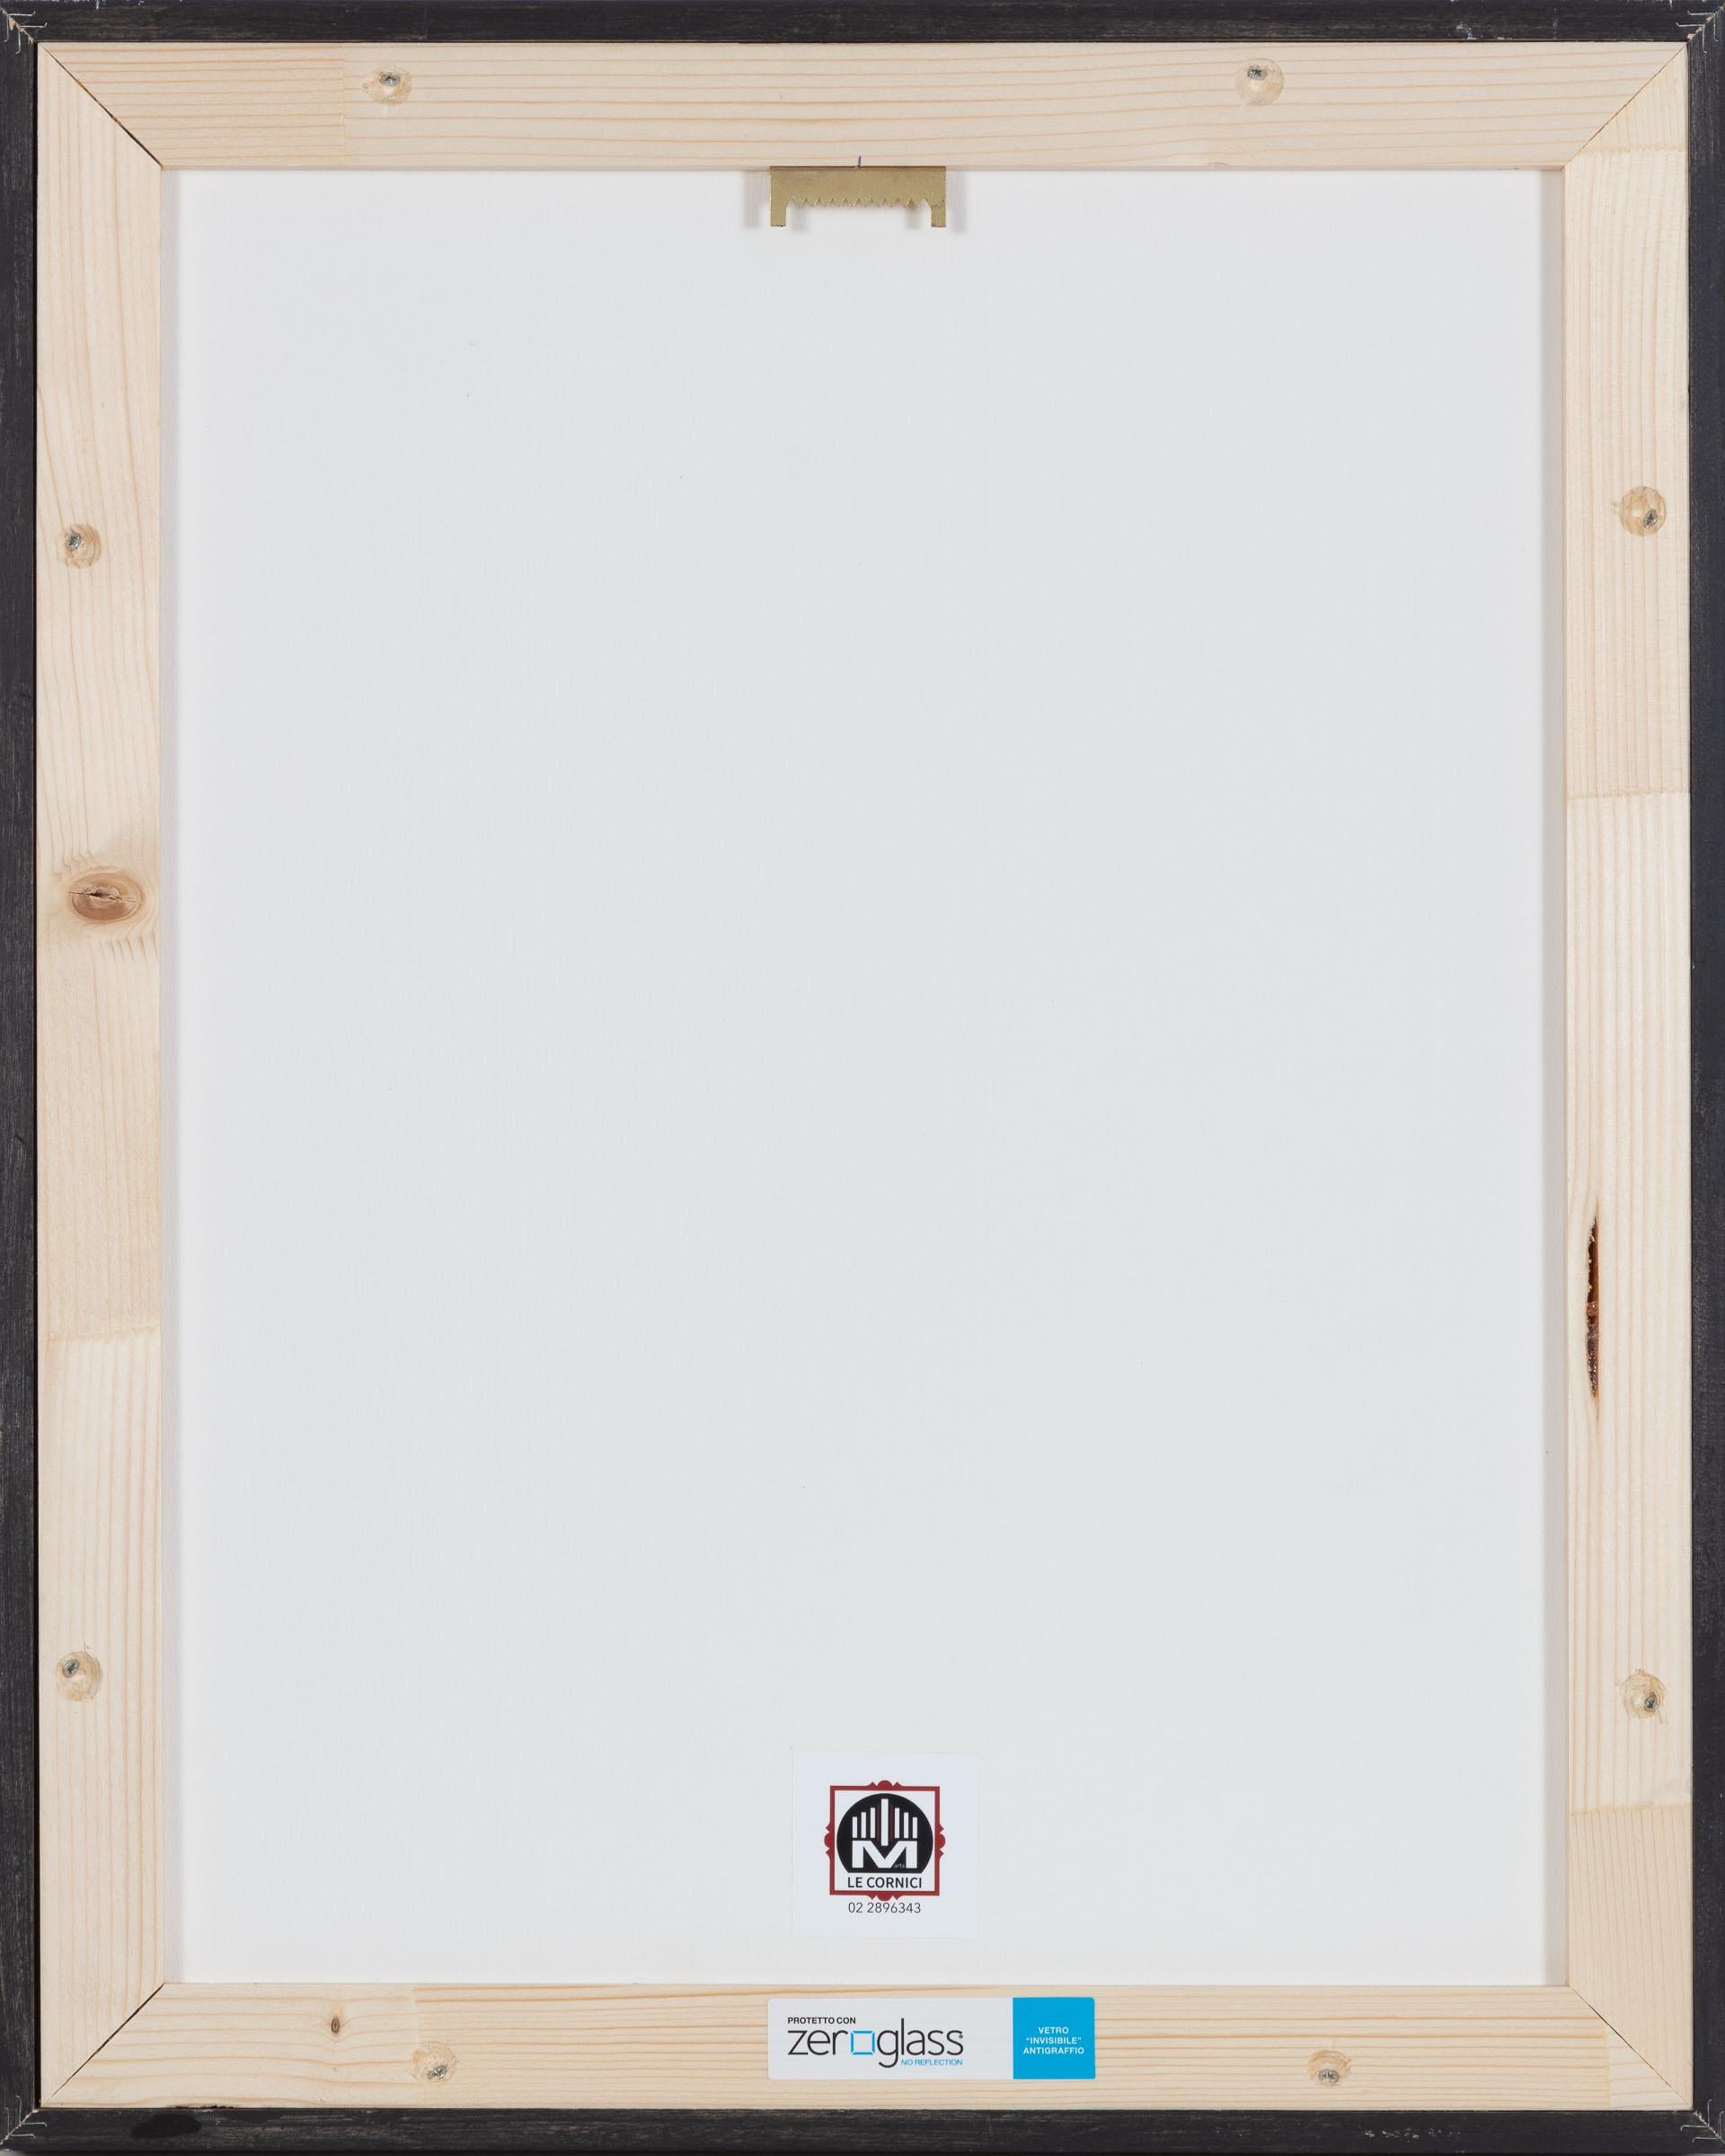 Ein Vintage-Druck von Helmut Newton aus dem Jahr 2000 mit Originalstempeln auf der Rückseite und einem Echtheitszertifikat, ausgestellt von Davide Manfredi, dem ehemaligen italienischen Vertreter des Künstlers.  Verso Originalstempel des Künstlers,